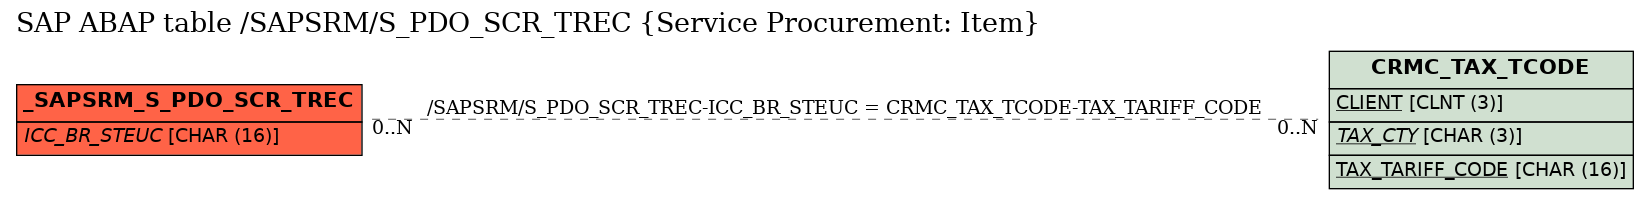 E-R Diagram for table /SAPSRM/S_PDO_SCR_TREC (Service Procurement: Item)